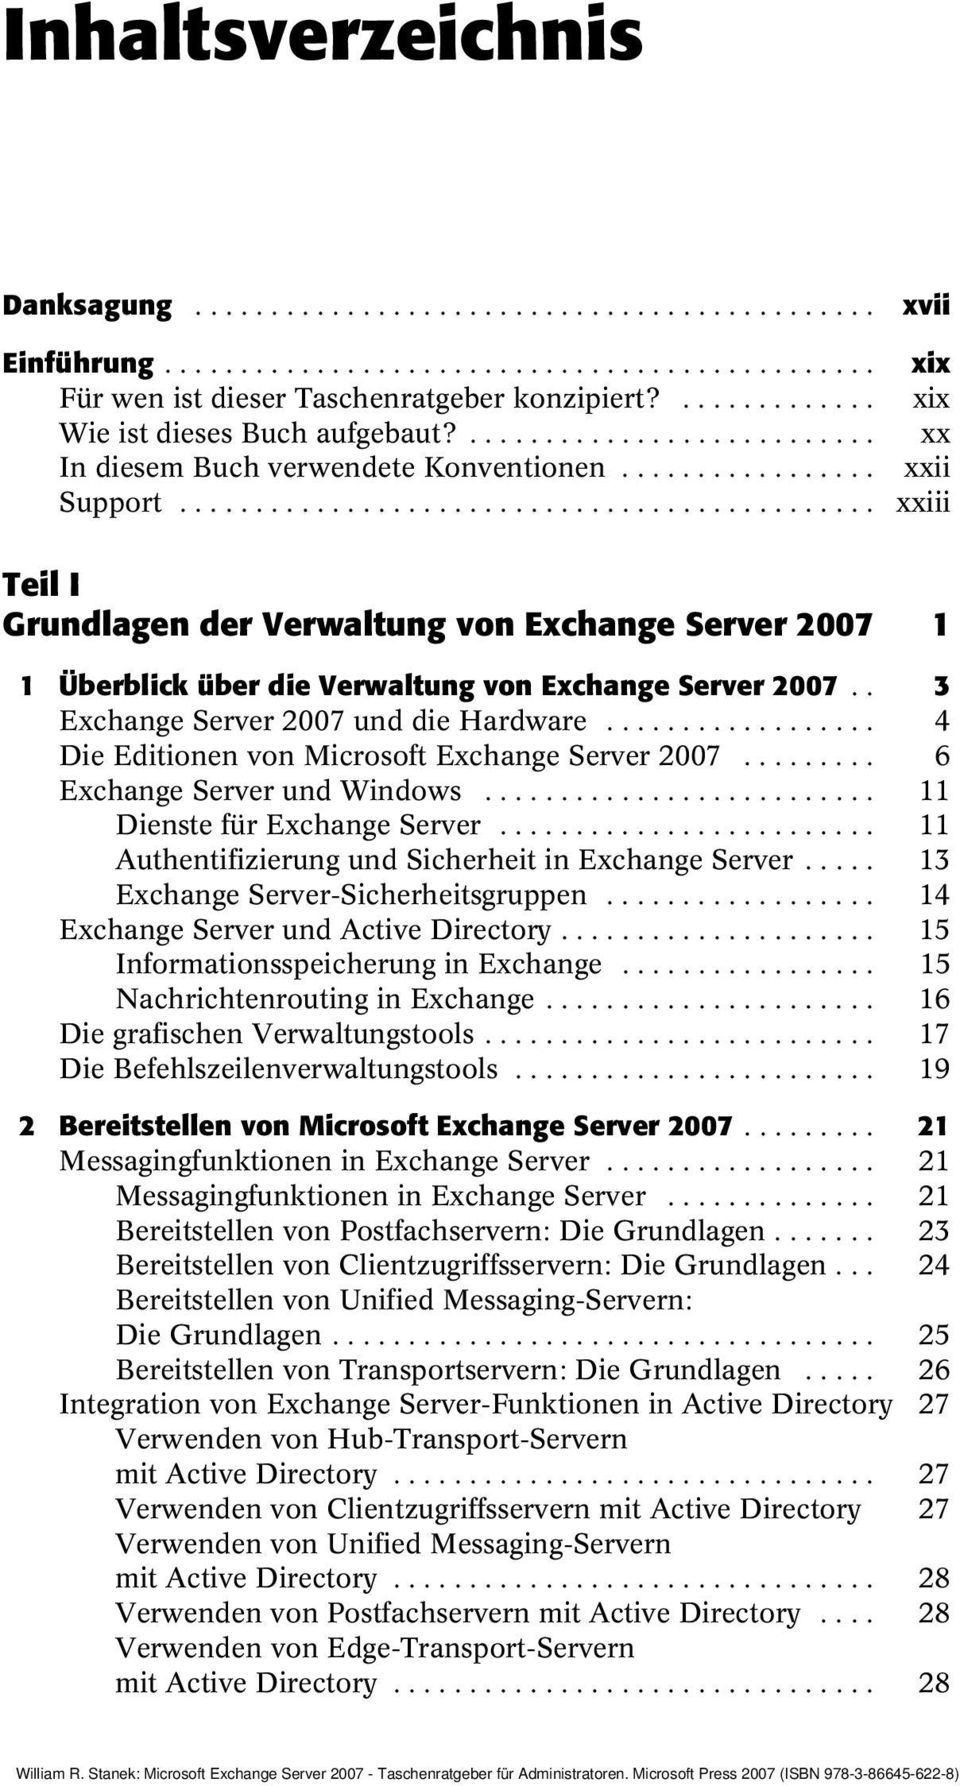 ............................................. xxiii Teil I Grundlagen der Verwaltung von Exchange Server 2007 1 1 Überblick über die Verwaltung von Exchange Server 2007.